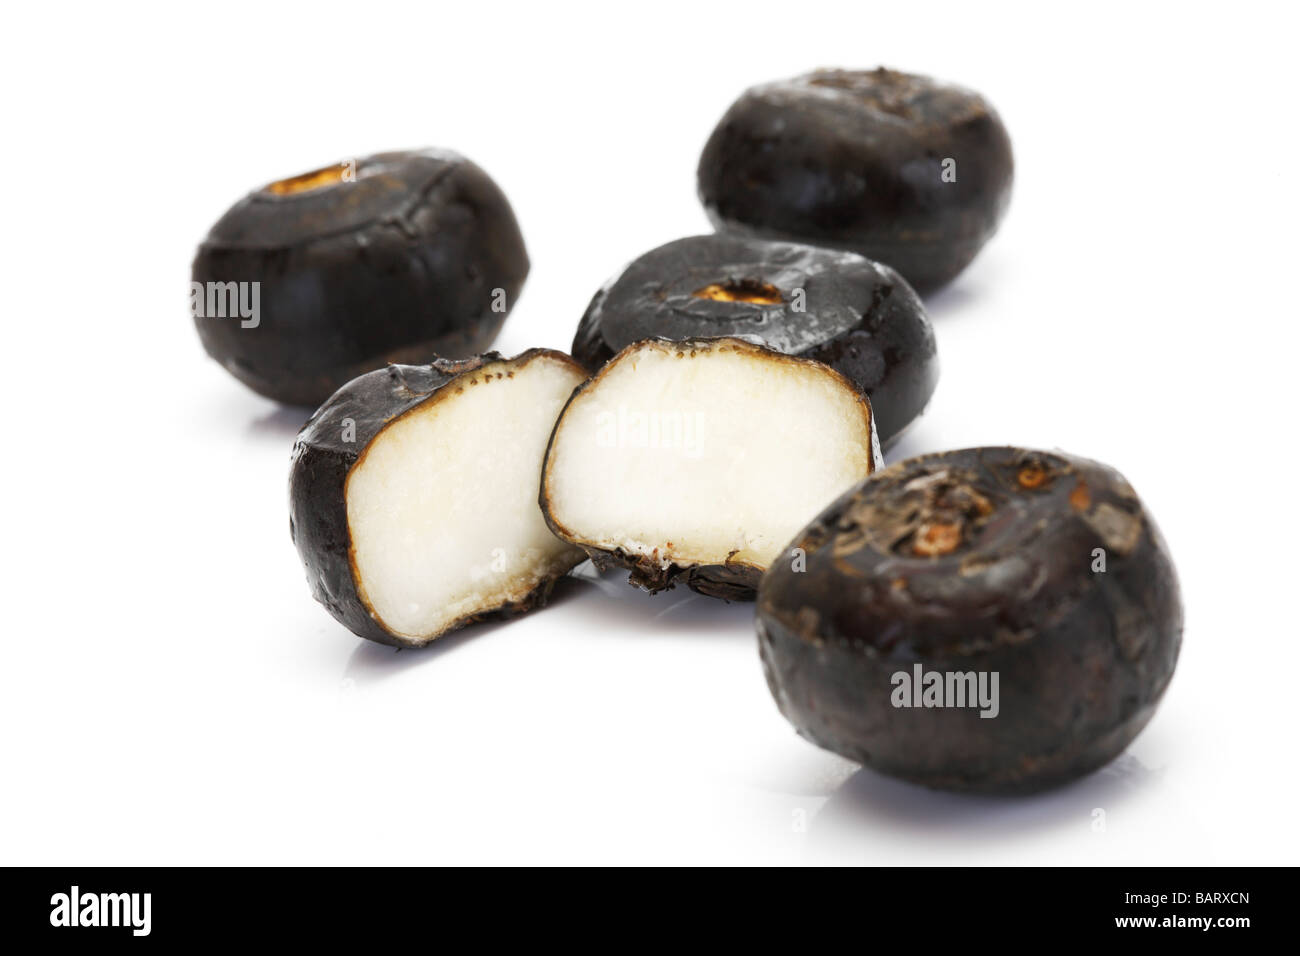 Chinese Water Chestnuts (Eleocharis dulcis) Stock Photo